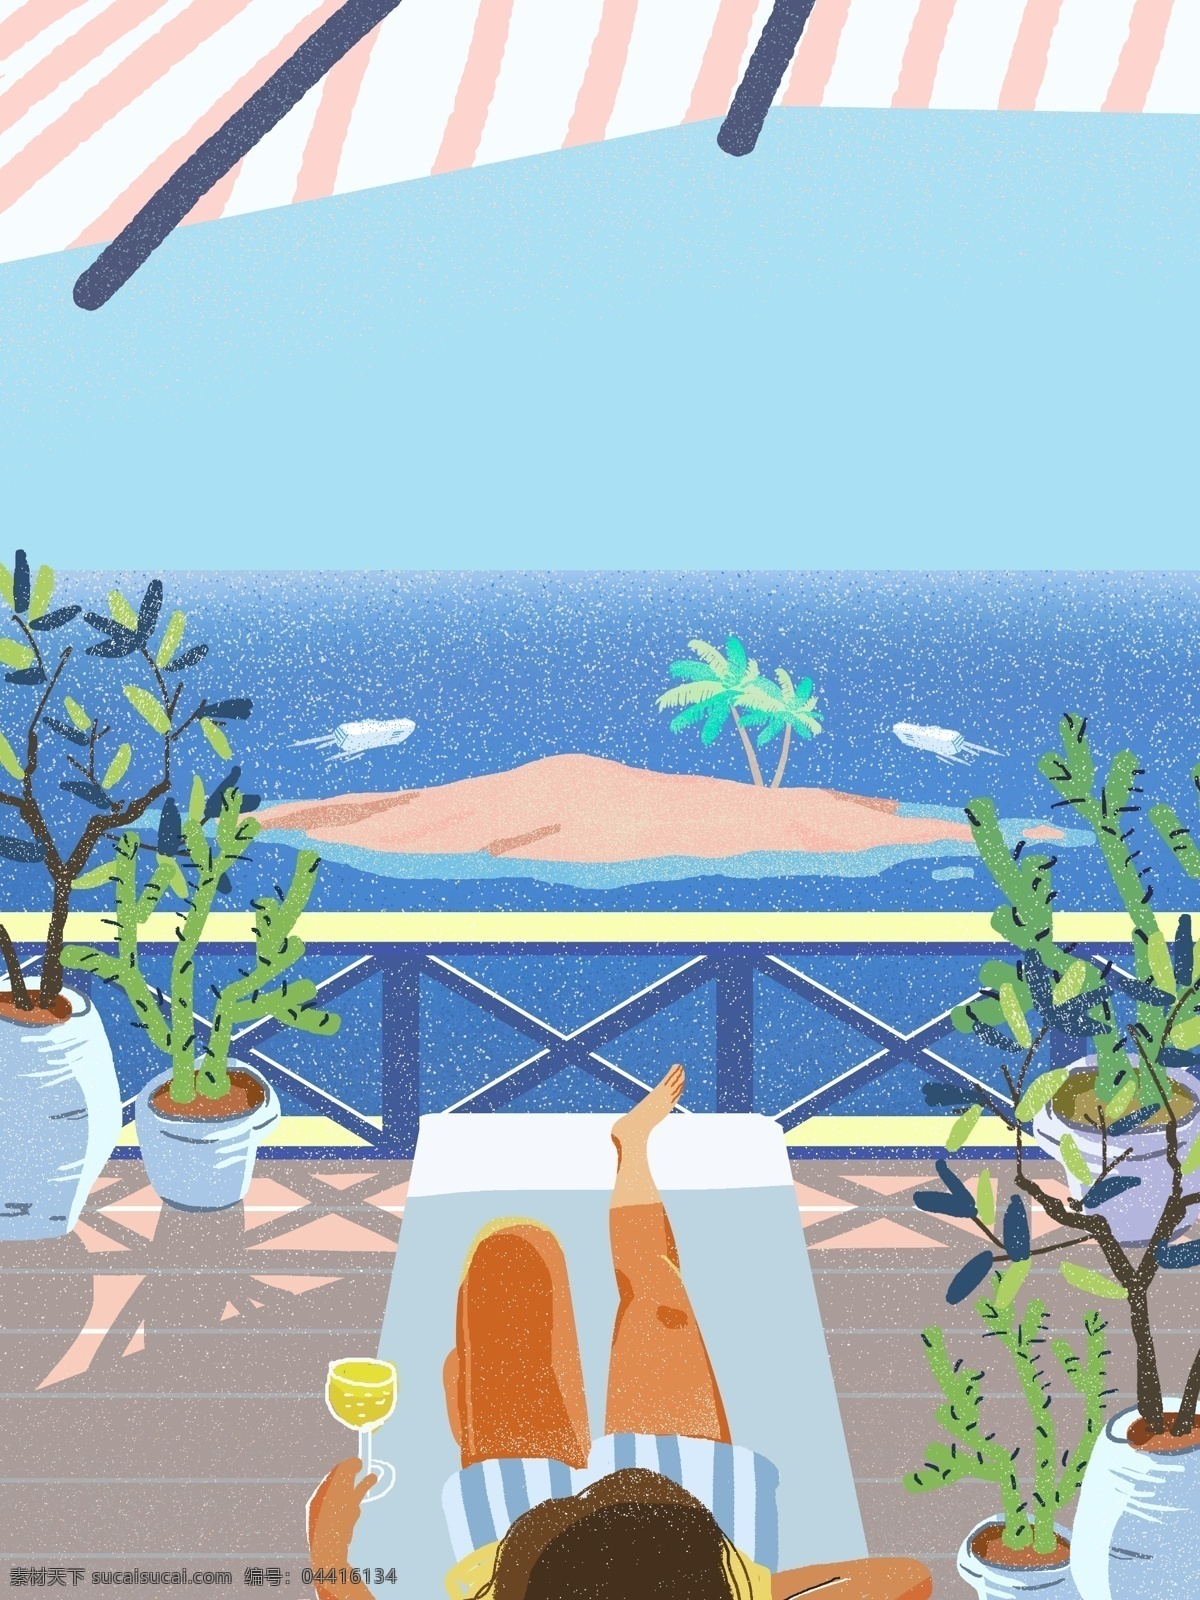 彩绘 马尔代夫 旅游 背景 海滩 背景图 大海 沙滩 植物 夏日 旅游背景 广告背景 背景设计 psd背景 特邀背景 促销背景 背景展板图